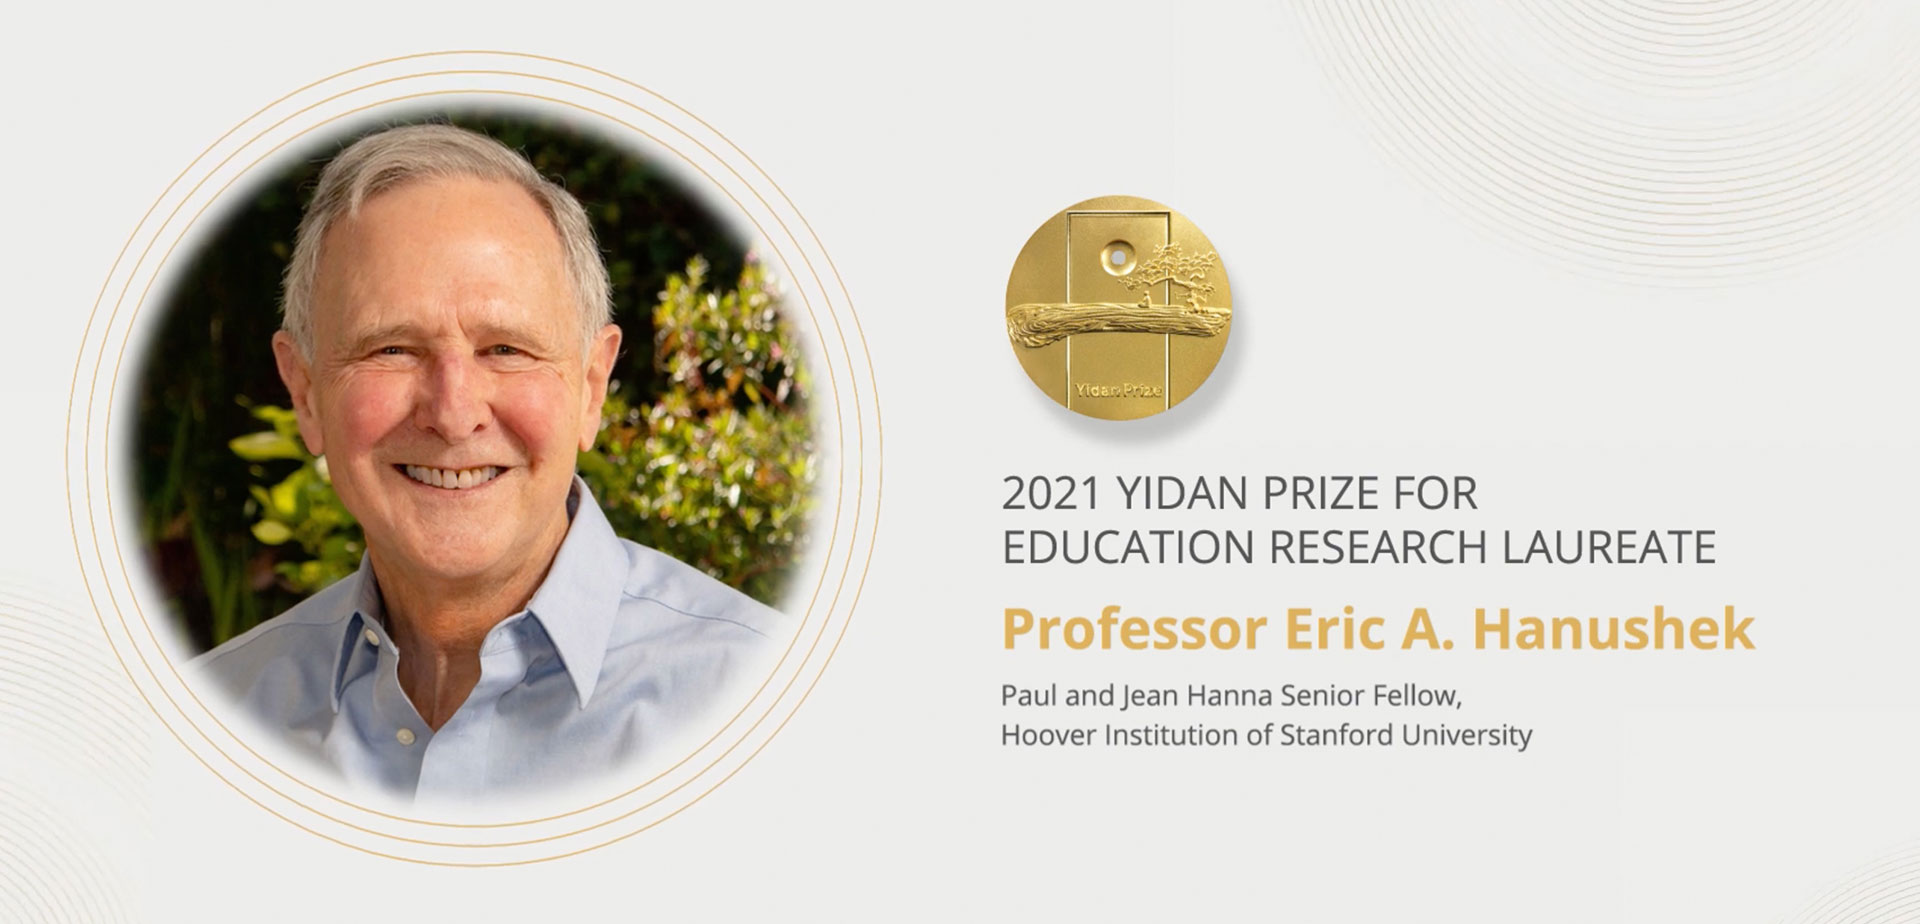 Meet Professor Eric A. Hanushek | 2021 Yidan Prize for Education Research Laureate